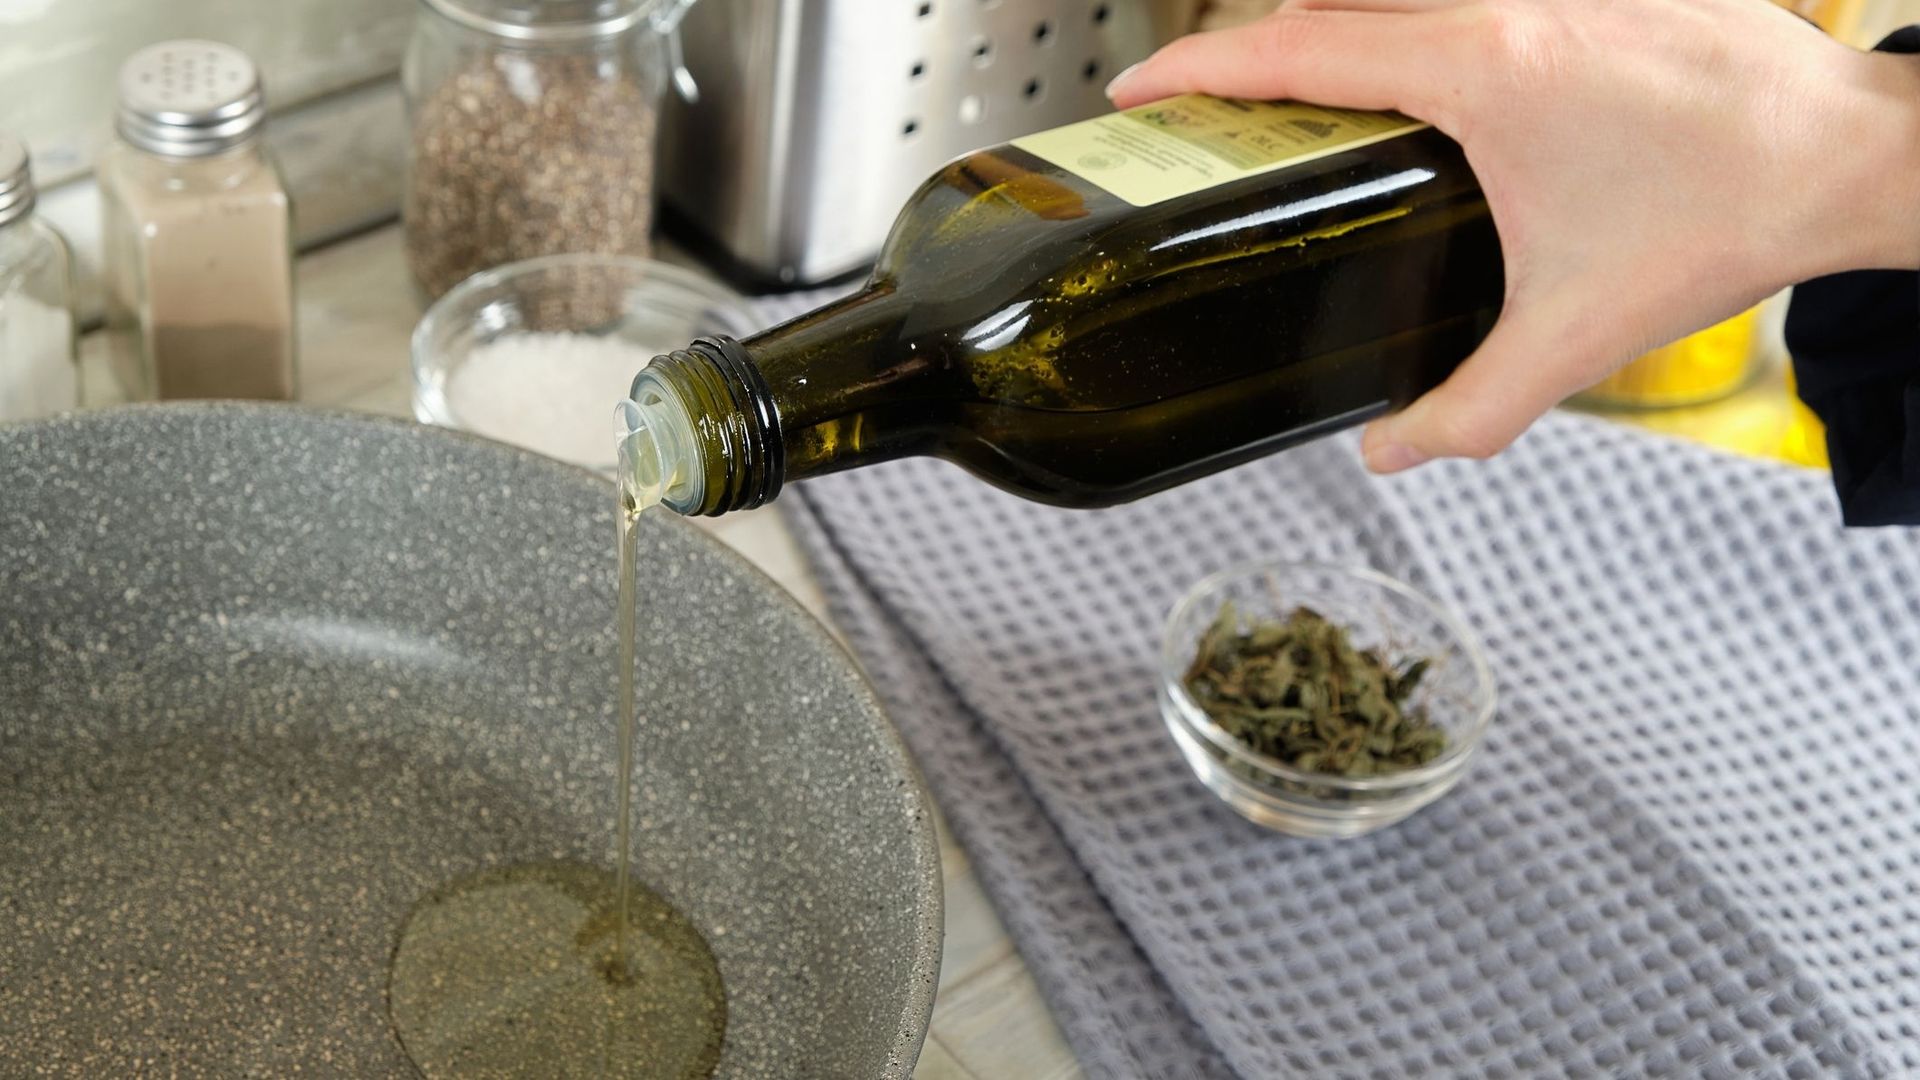 Les bienfaits de l'huile d'olive pour la peau 